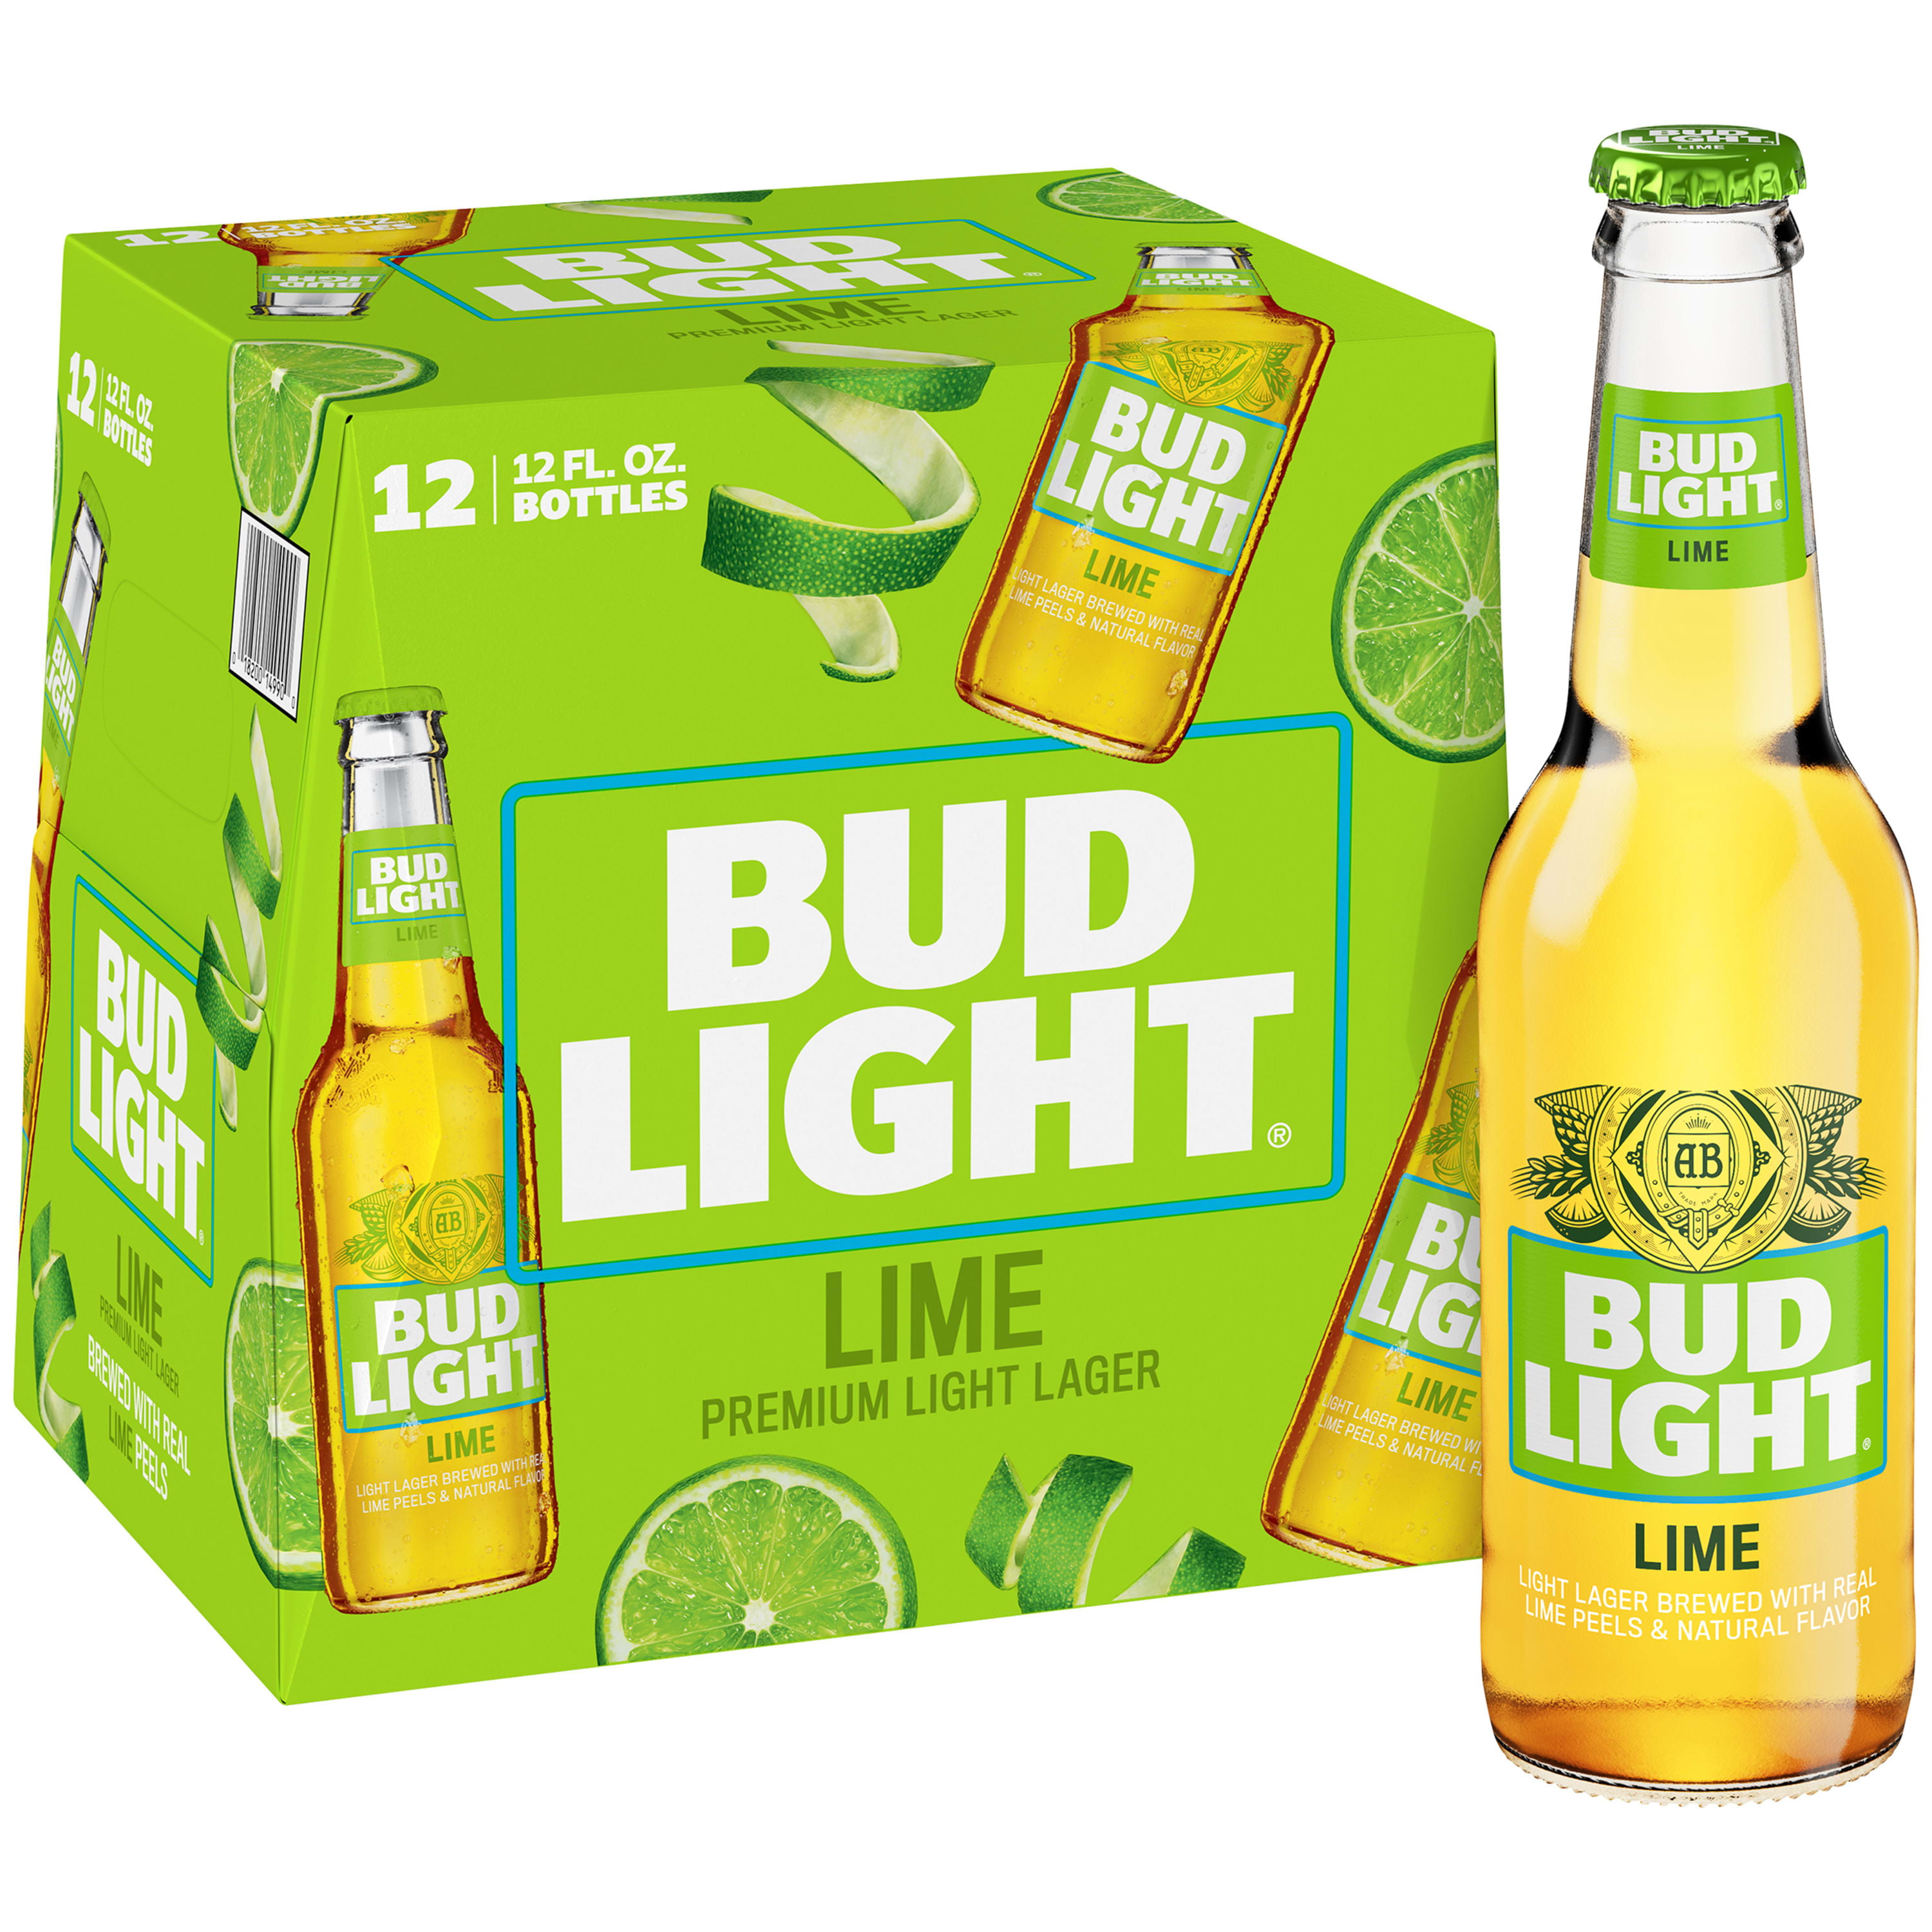 bud-light-lime-beer-12-pack-beer-12-fl-oz-bottles-walmart